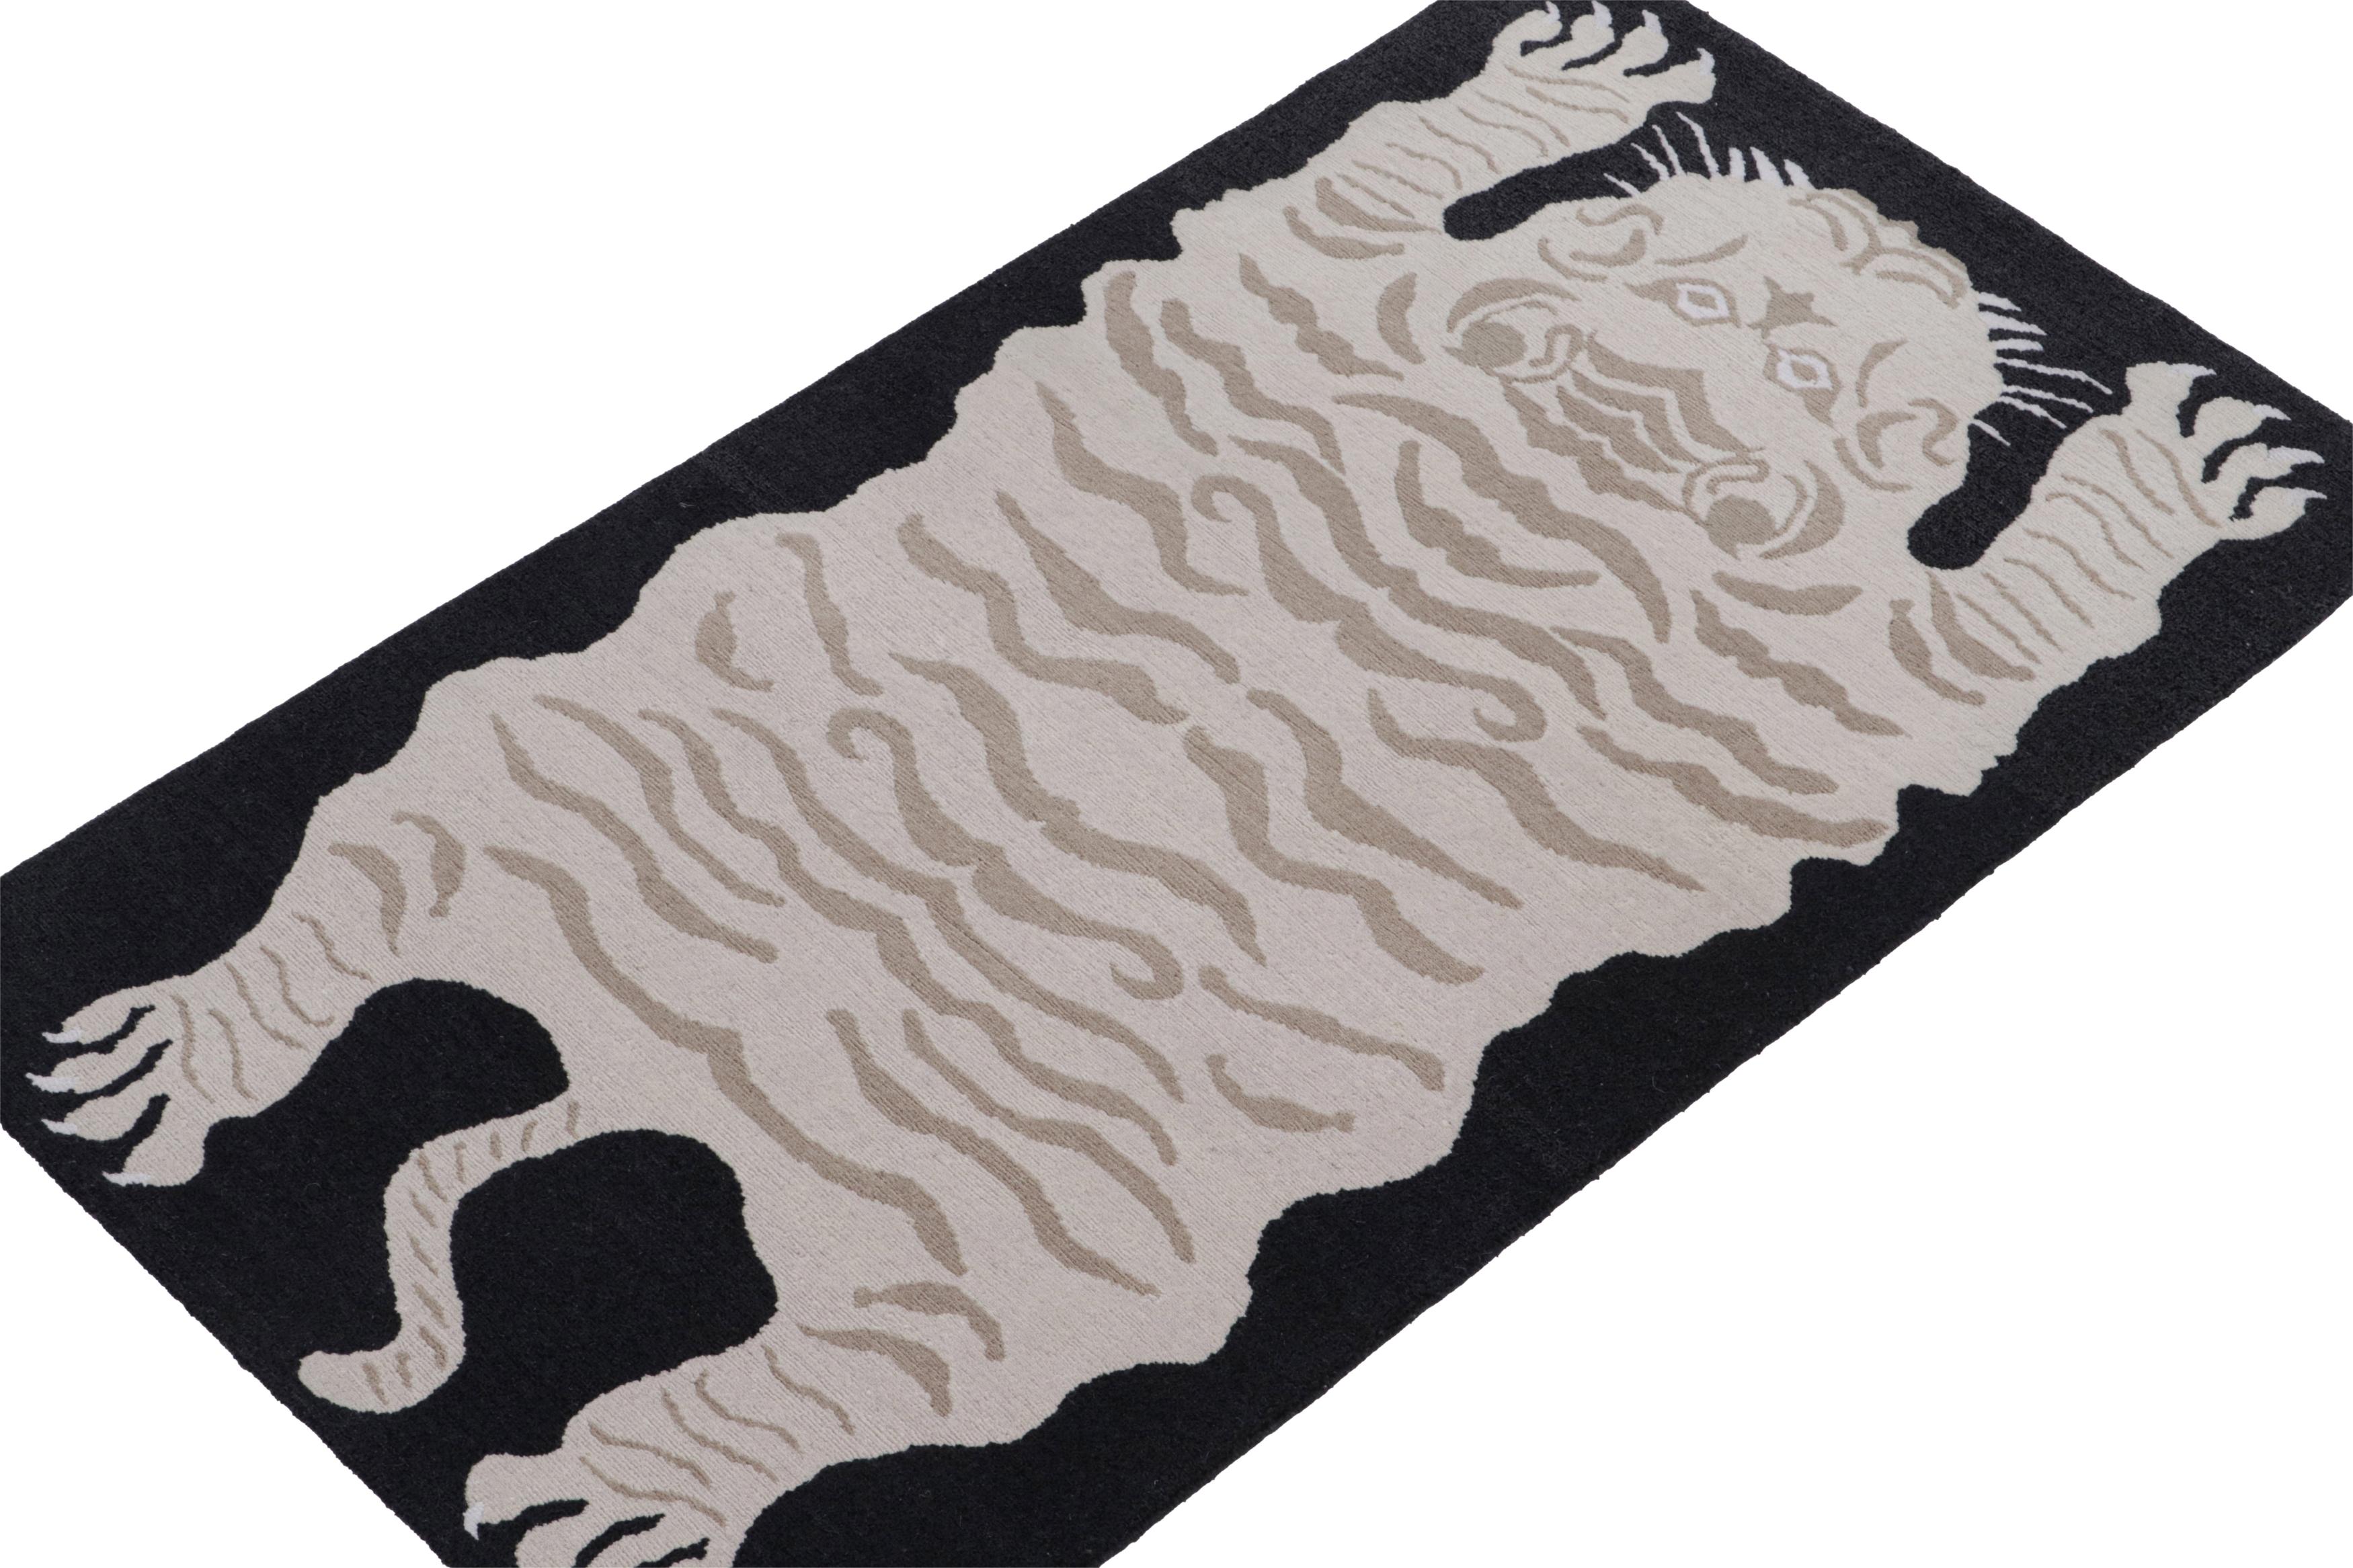 Dieses Teppichmuster ist eine kühne Neuheit in der Tigers Collection'S von Rug & Kilim. Unsere Kollektion umspannt mehrere Kulturen und greift ikonische Bildstile der Volkskunst und handgefertigte antike Orientteppiche gleichermaßen auf. 

Über das